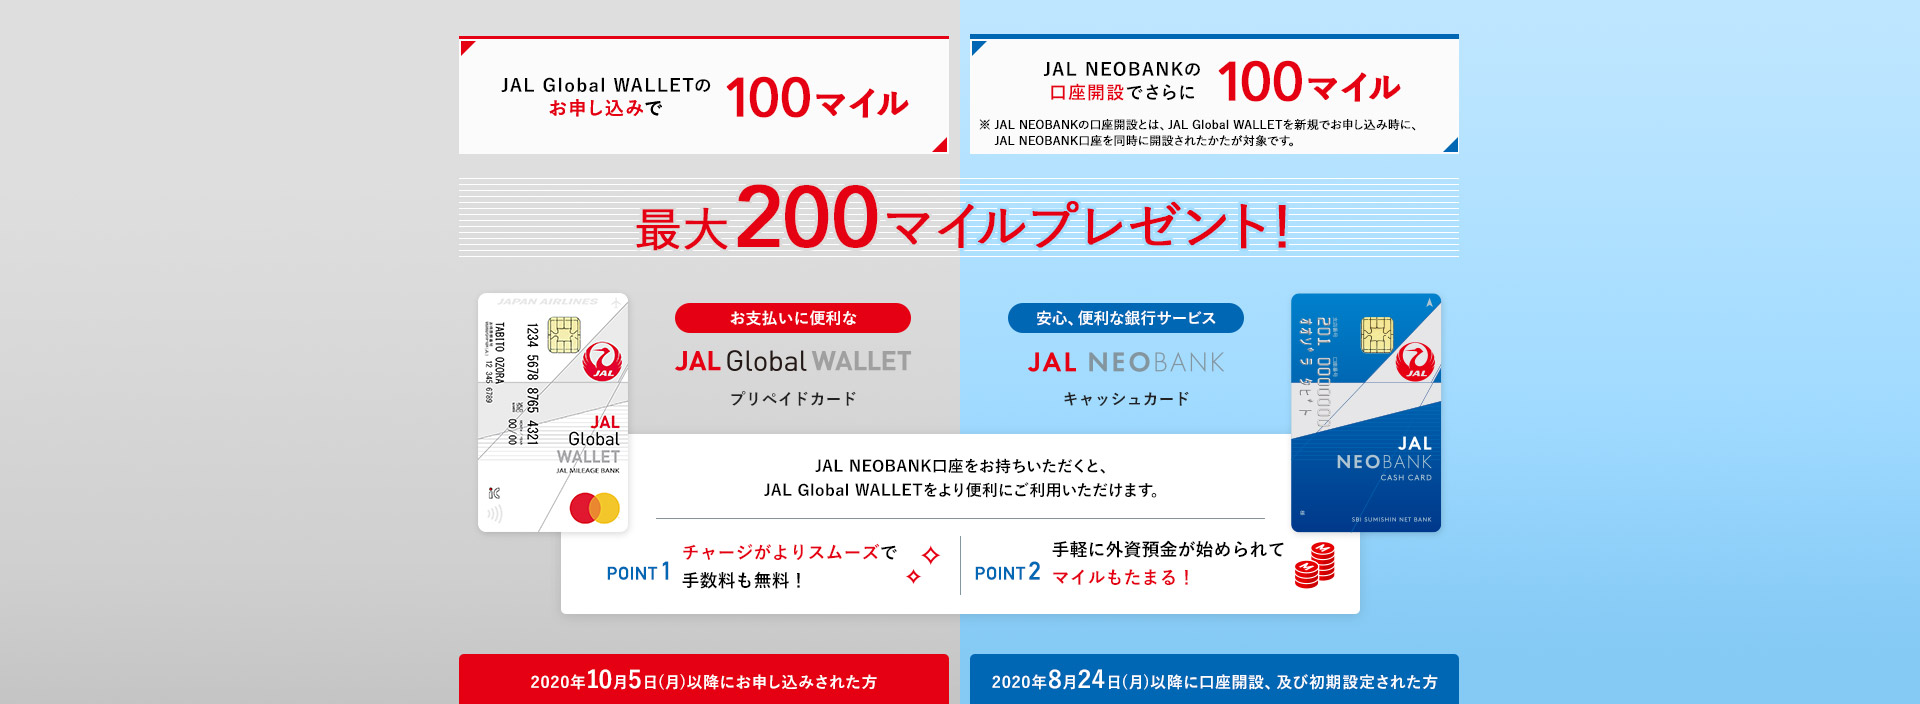 JAL Global  WALLETのお申し込みで100マイル JAL NEOBANKの口座開設でさらに100マイル 最大200マイルプレゼント！ JAL NEOBANK口座をお持ちいただくと、JAL Global WALLETをより便利にご利用いただけます。POINT1 チャージがよりスムーズで、手数料も無料！POINT2　手軽に外資預金が始められて、マイルもたまる！※JAL Global  WALLETを新規でお申し込み時に、JAL NEOBANK口座を同時に開設された方が対象です。2020年10月1日(木)以降にJAL Global WALLETにお申し込みされた方 2020年8月24日(月)以降にJAL NEOBANKの口座開設、および初期設定完了された方
